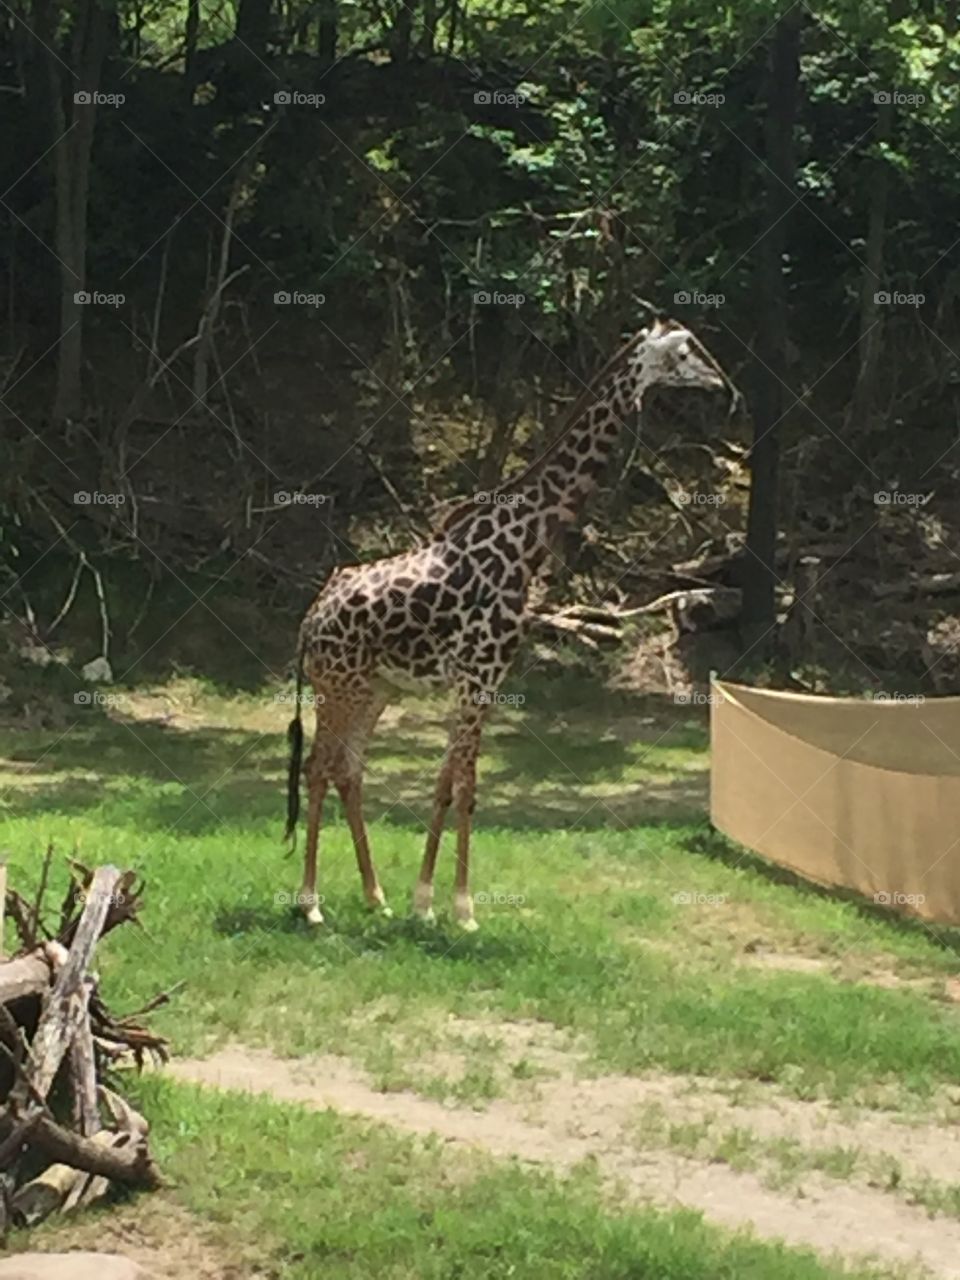 Visit to Cincinnati Zoo